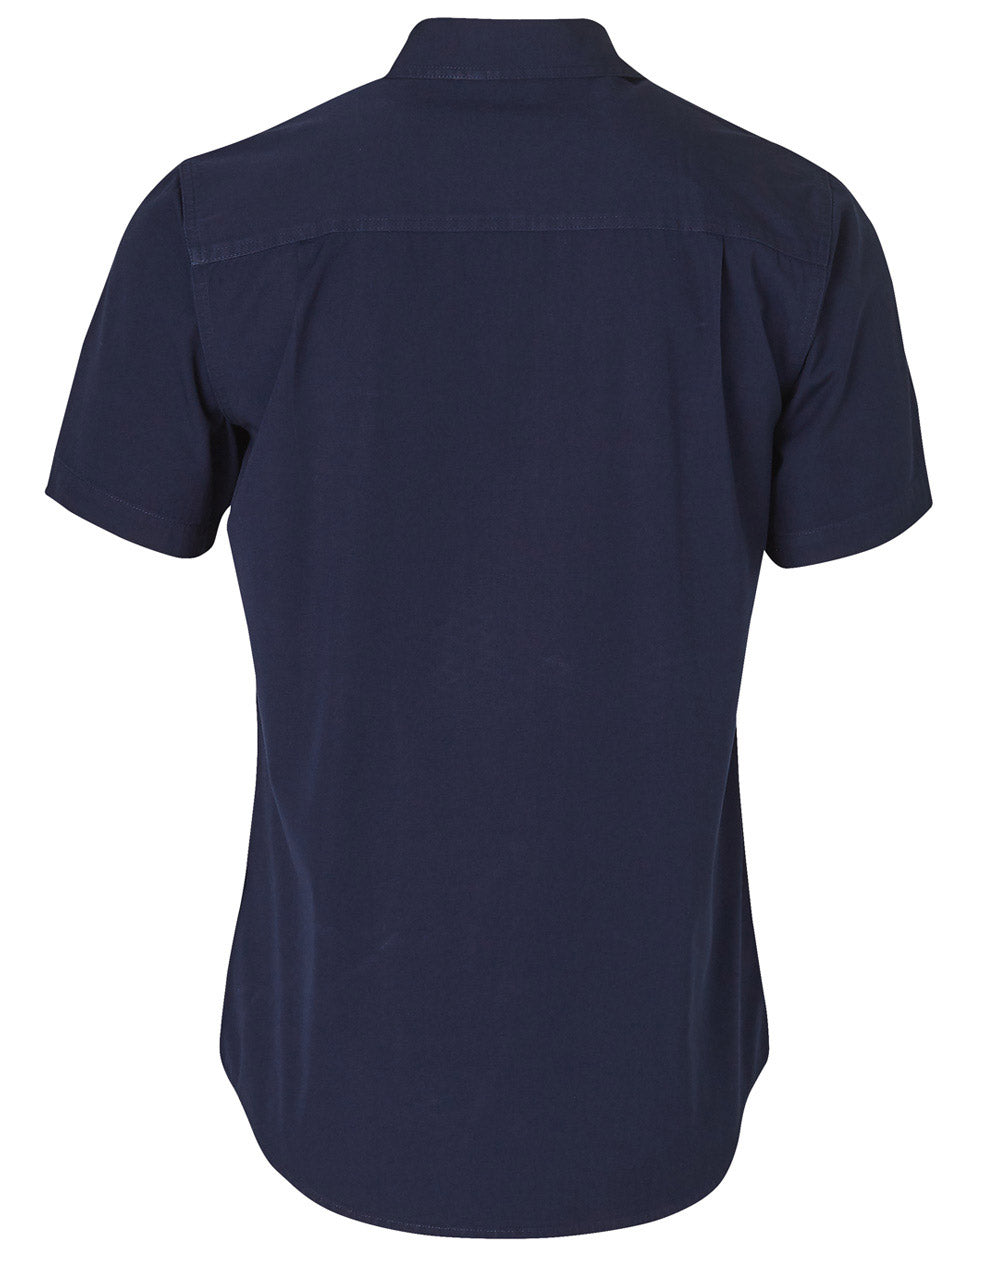 Winning Spirit-Dura Wear Short Sleeve work Shirt-WT05